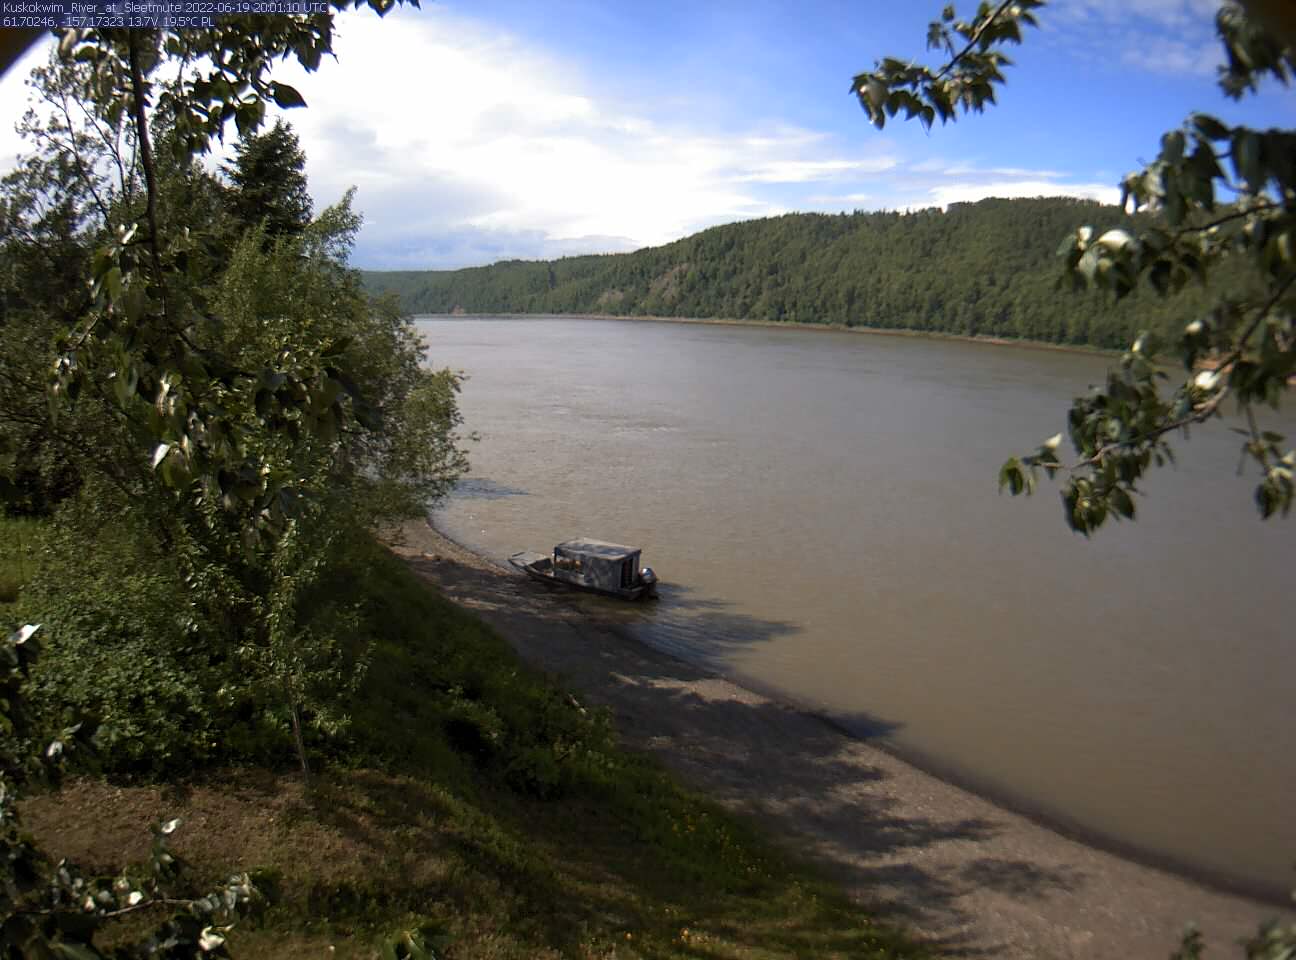 Kuskokwim_River_at_Sleetmute_20220619200111.jpg